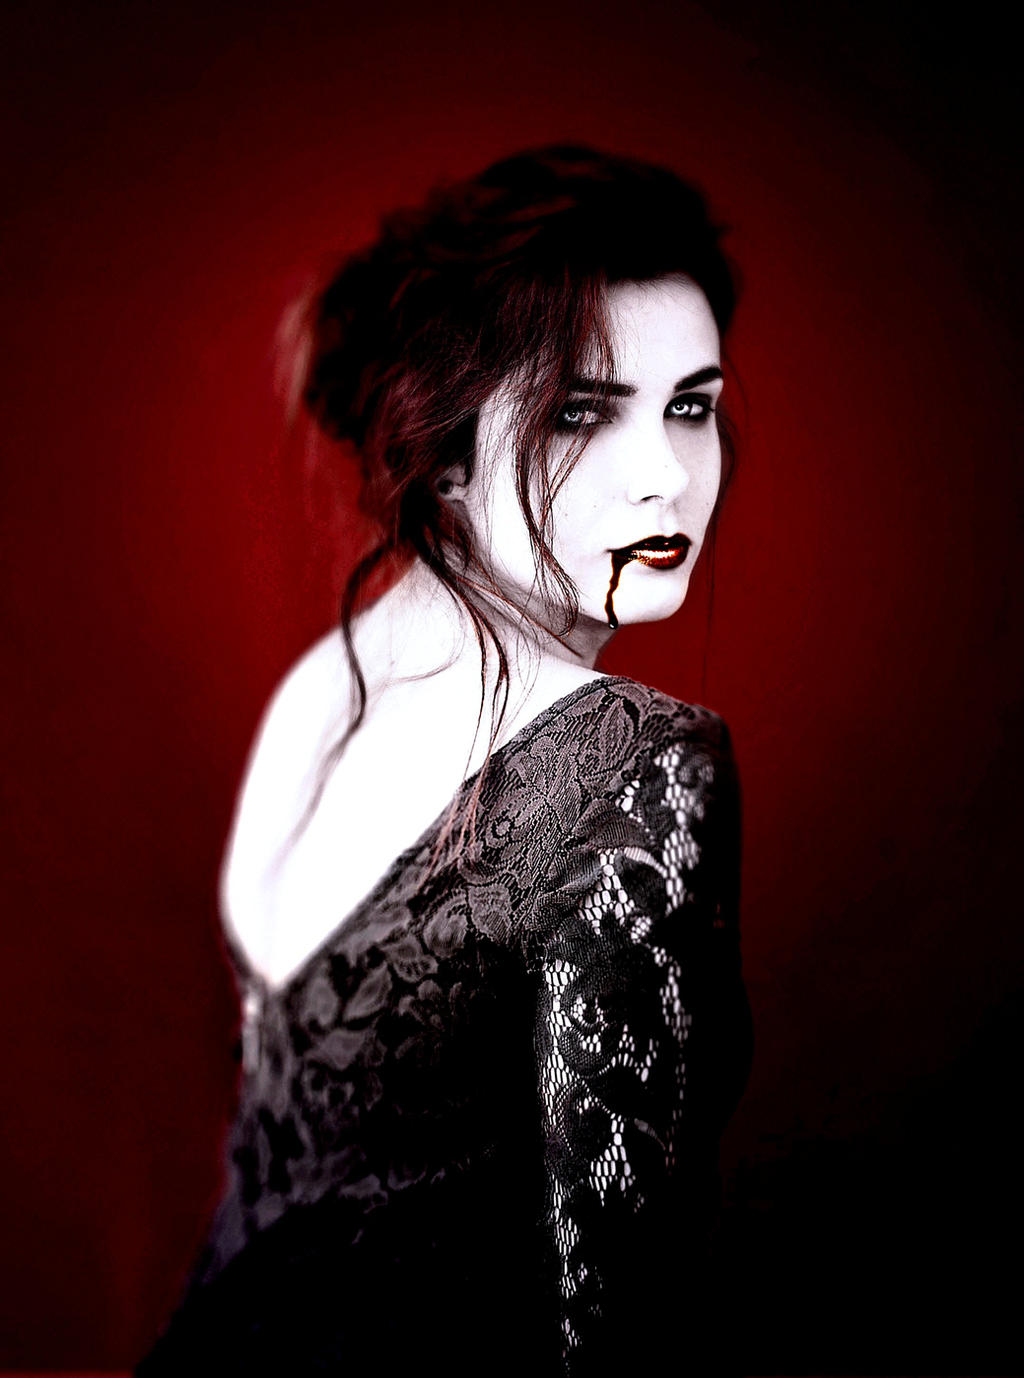 Vampire Marta-Red Death by Darkest-B4-Dawn on DeviantArt